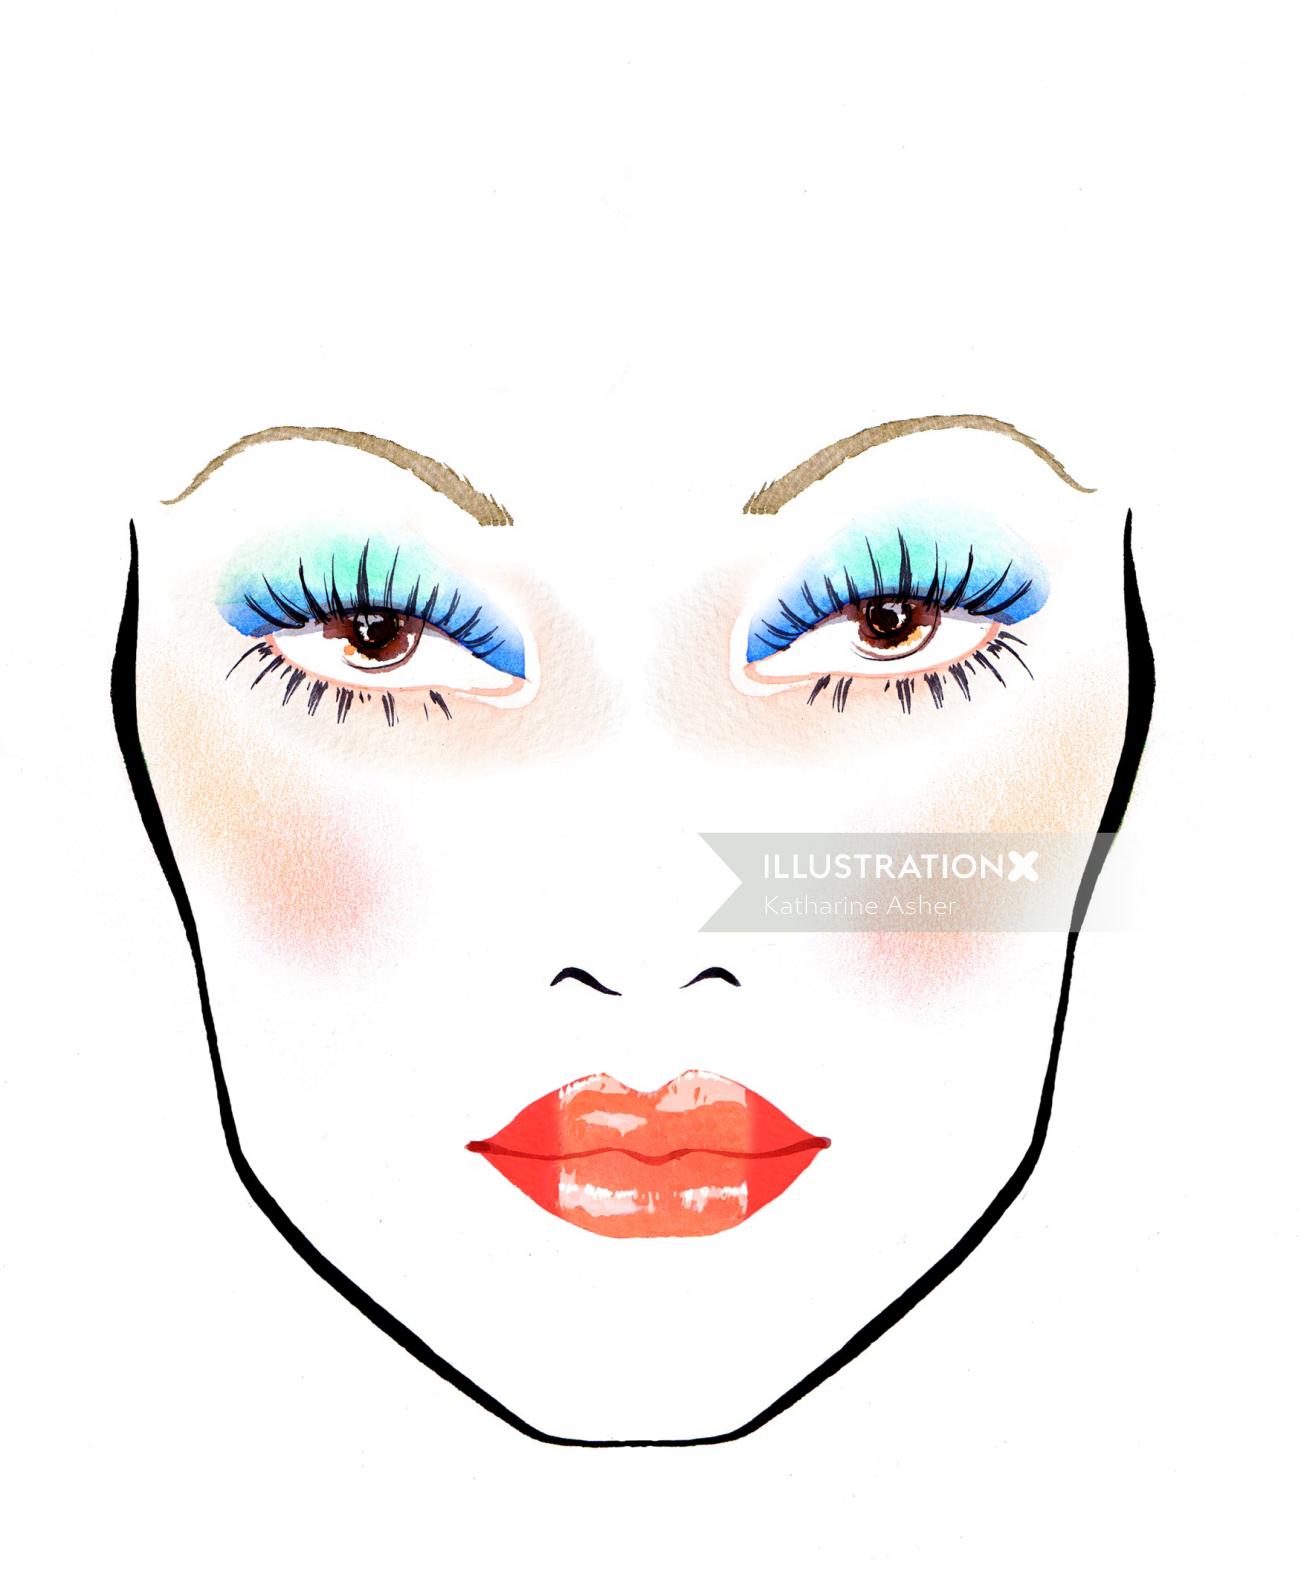 キャサリン・アッシャーによる青い目と赤い唇のイラスト